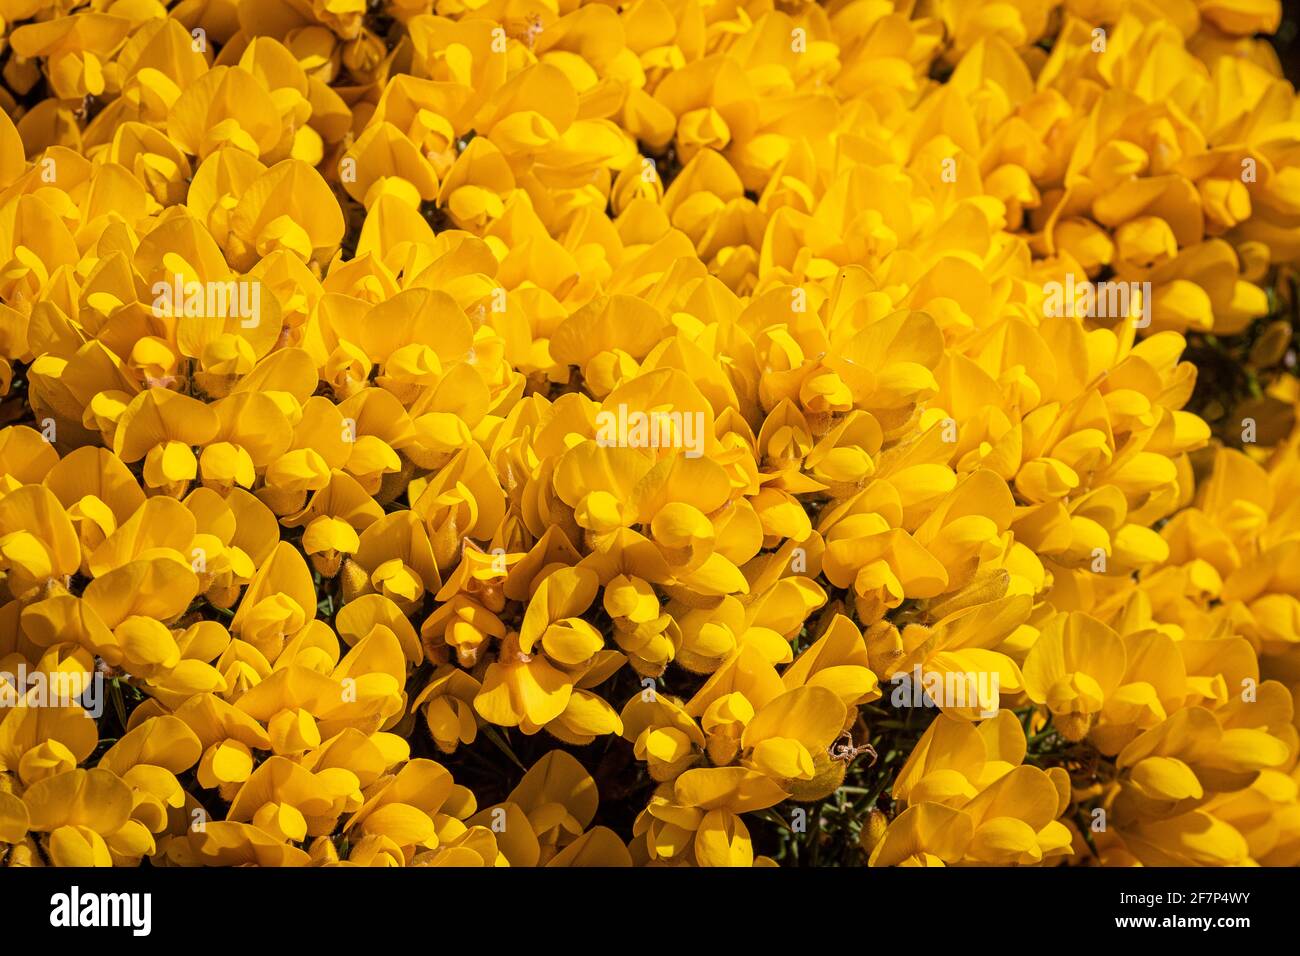 Cespuglio di gorse in fiore pieno, chiamato anche whin Scozia e furze nel sud-ovest dell'Inghilterra. Una cornice piena di fiori gialli luminosi al sole Foto Stock